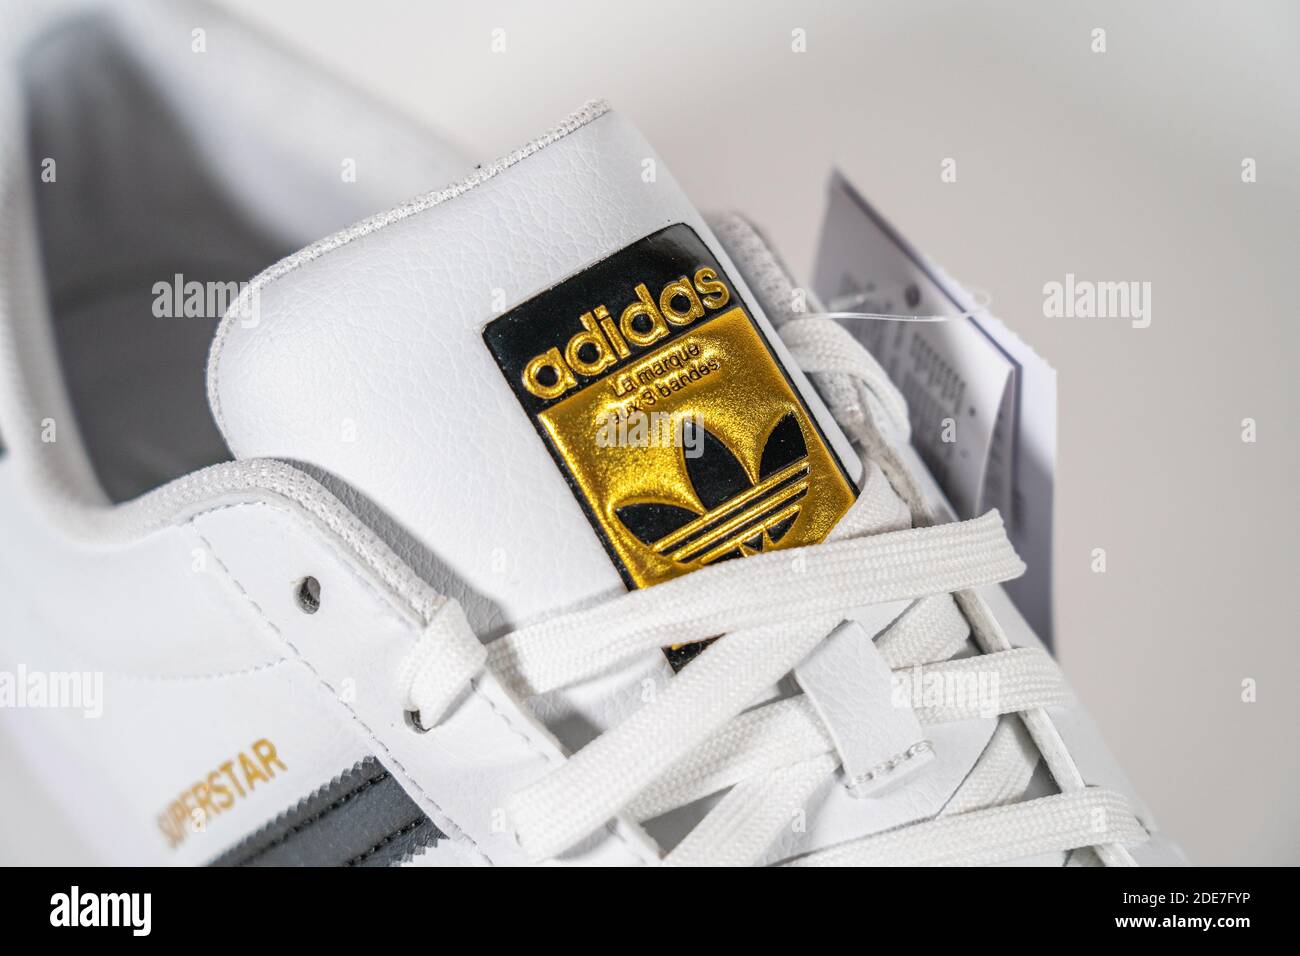 Adidas Superstar - berühmte Sneaker Modell vom deutschen Hersteller von Sportgeräten und Zubehör Adidas produziert. Retro Basketballschuh, in Produktion seit 1969 - Moskau, Russland - November 2020. Stockfoto